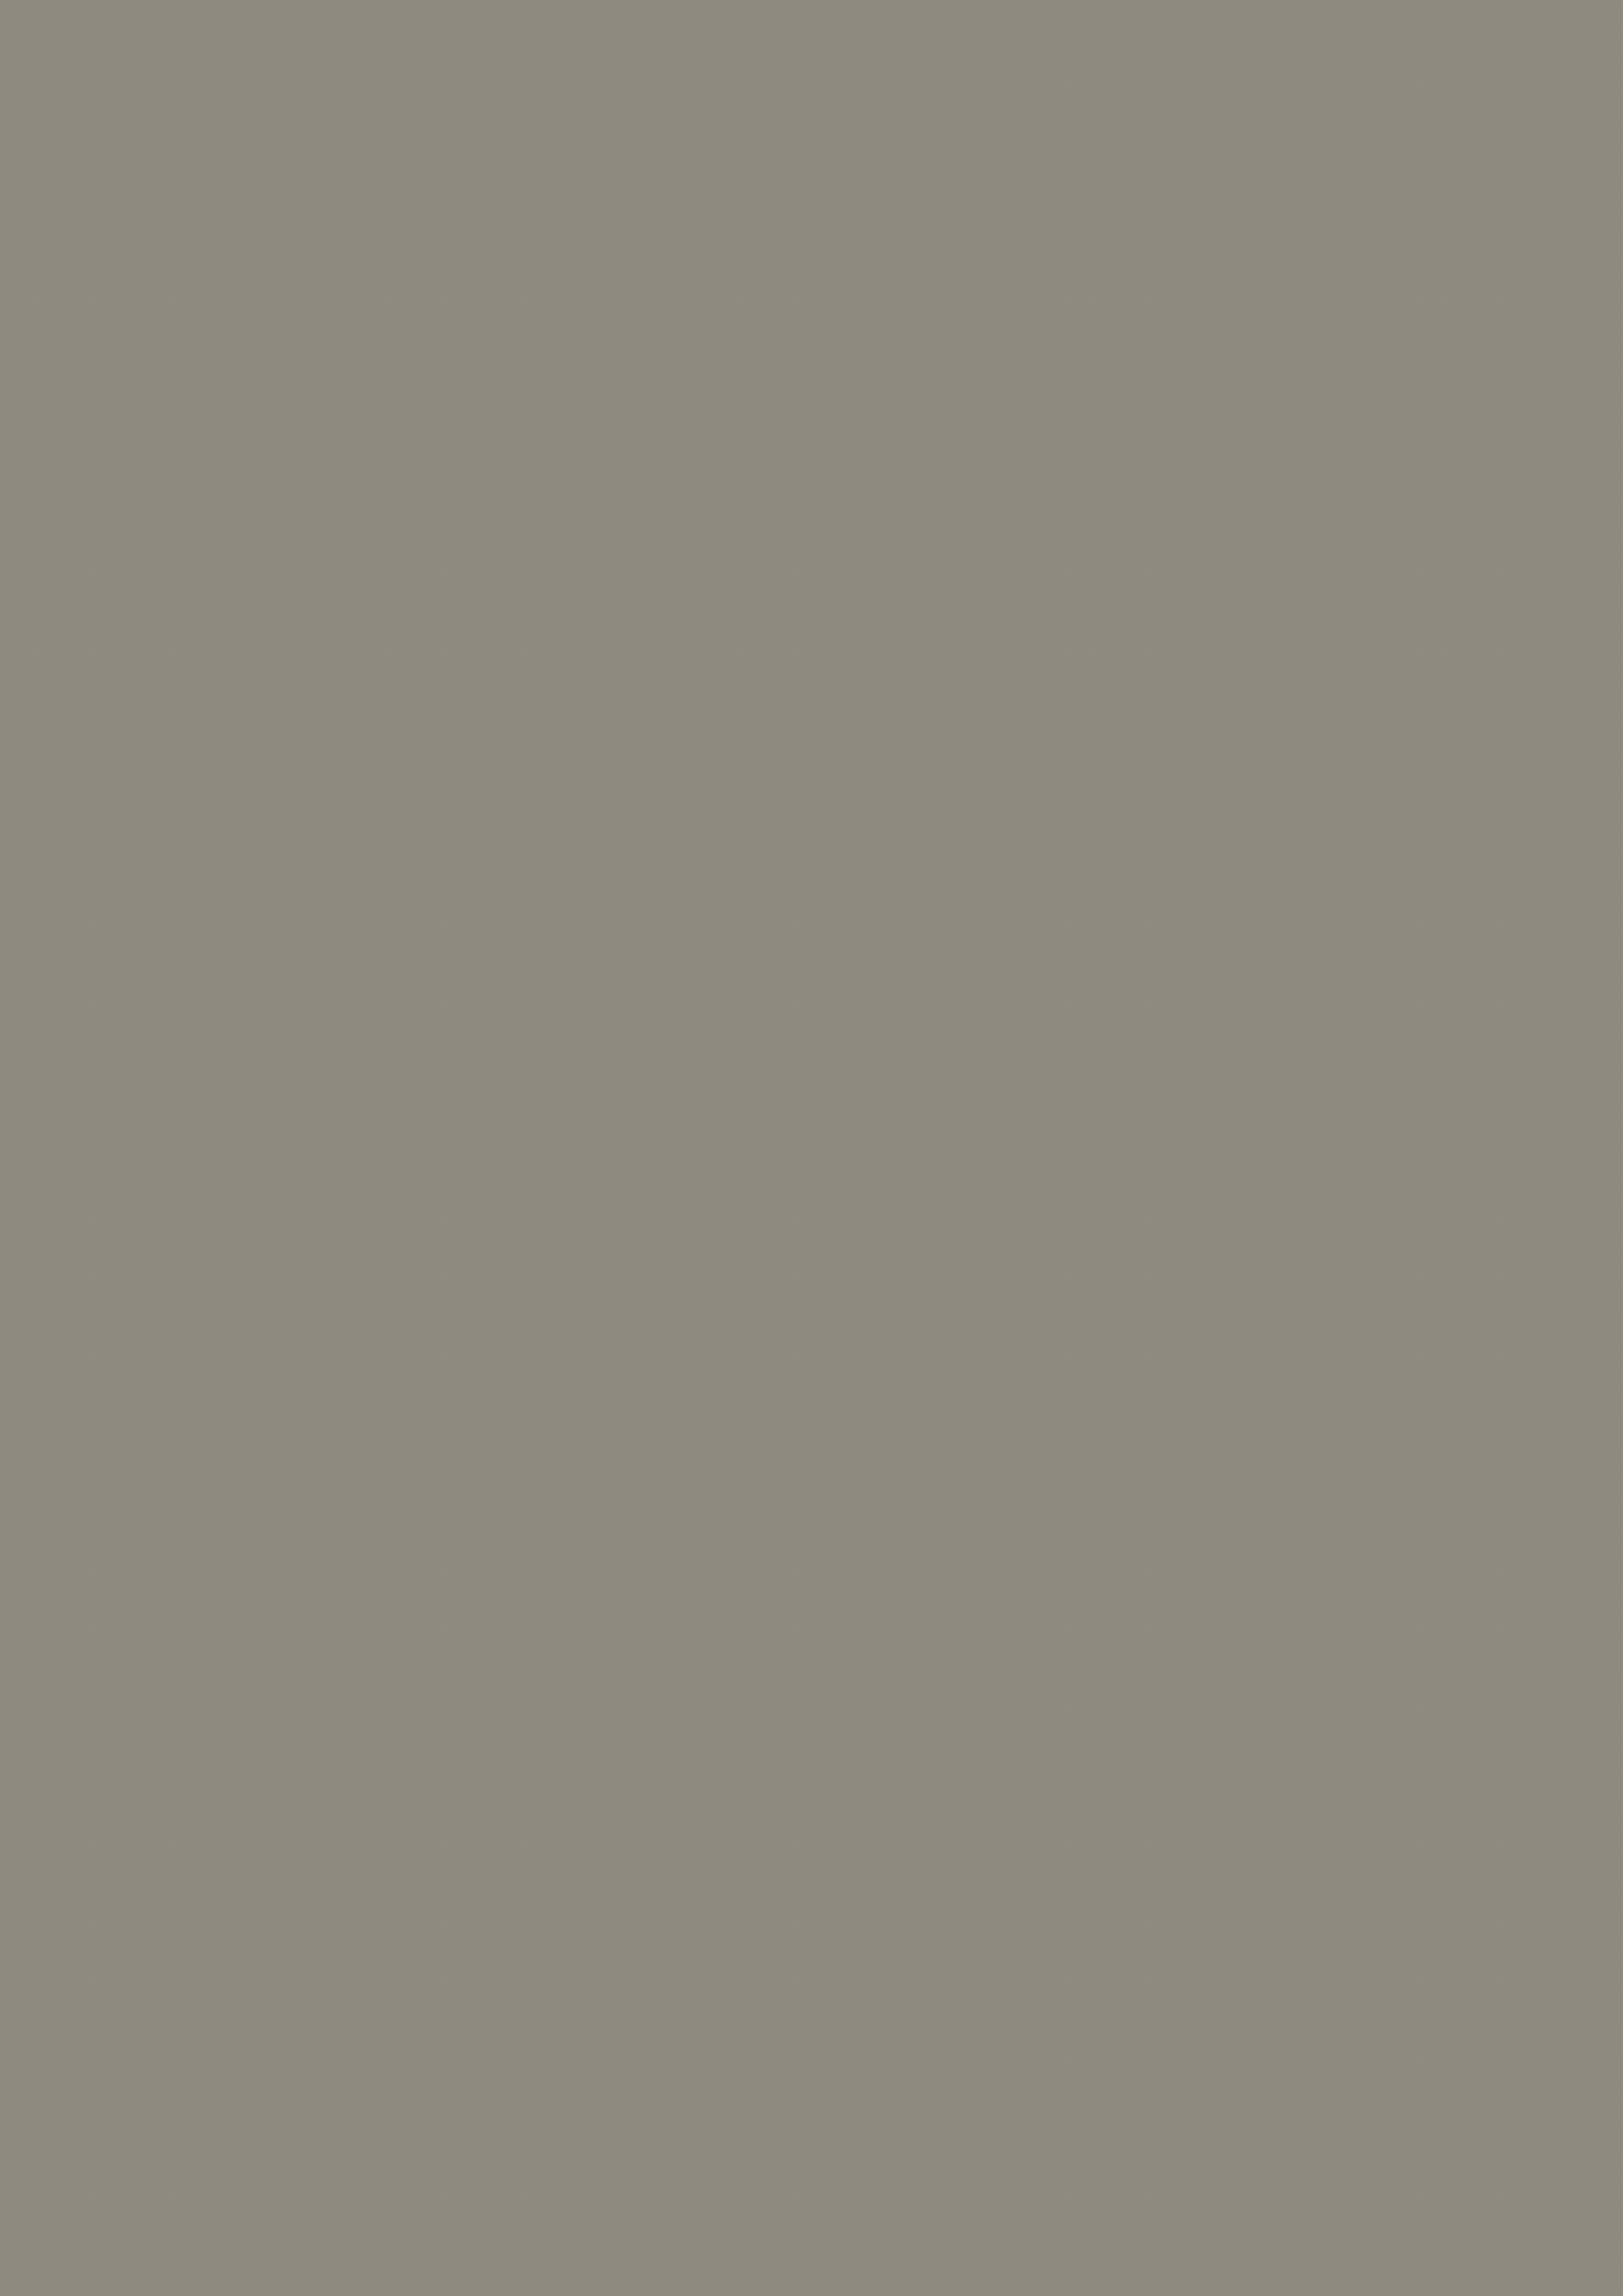 ПВХ пленка БЕЖЕВЫЙ ШЁЛК с эффектом шёлковой поверхности из каталога MULTIMA by IMAWELL | ПВХ пленка 3D БЕЖЕВЫЙ ШЁЛК европейского качества для мебели и дверей от ЛАМИС